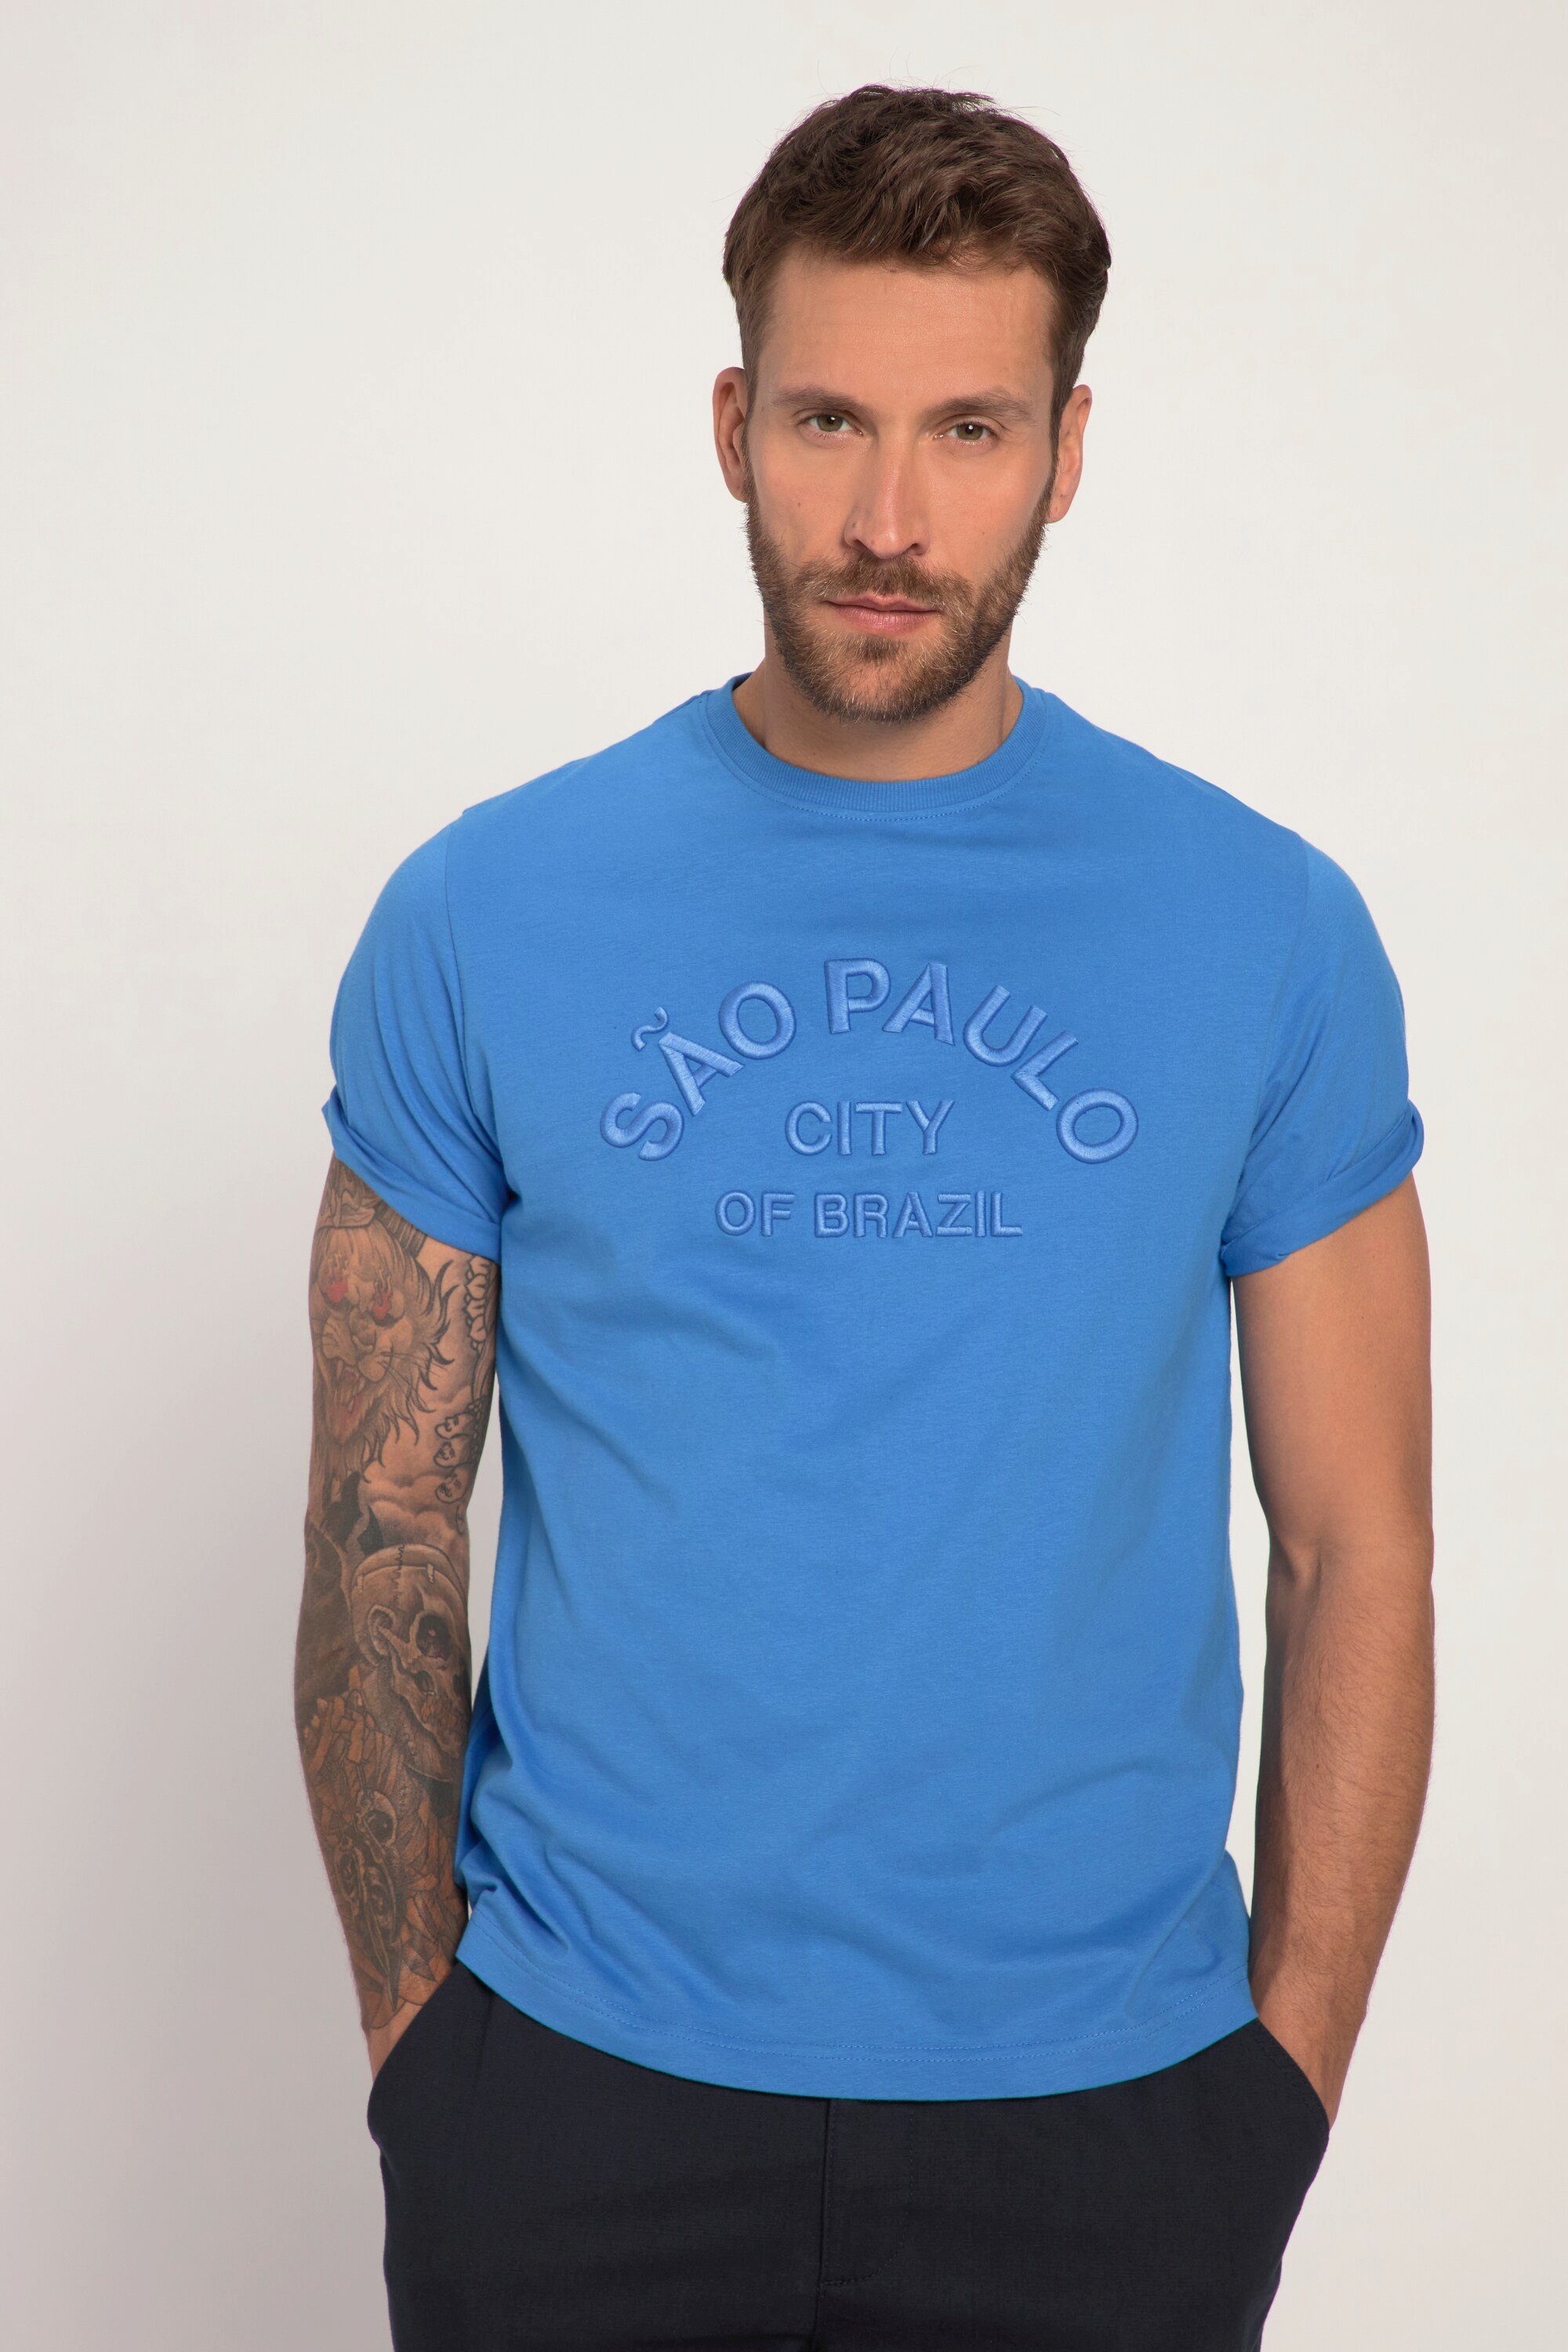 Halbarm T-Shirt Rundhals blau JP1880 T-Shirt Stickerei